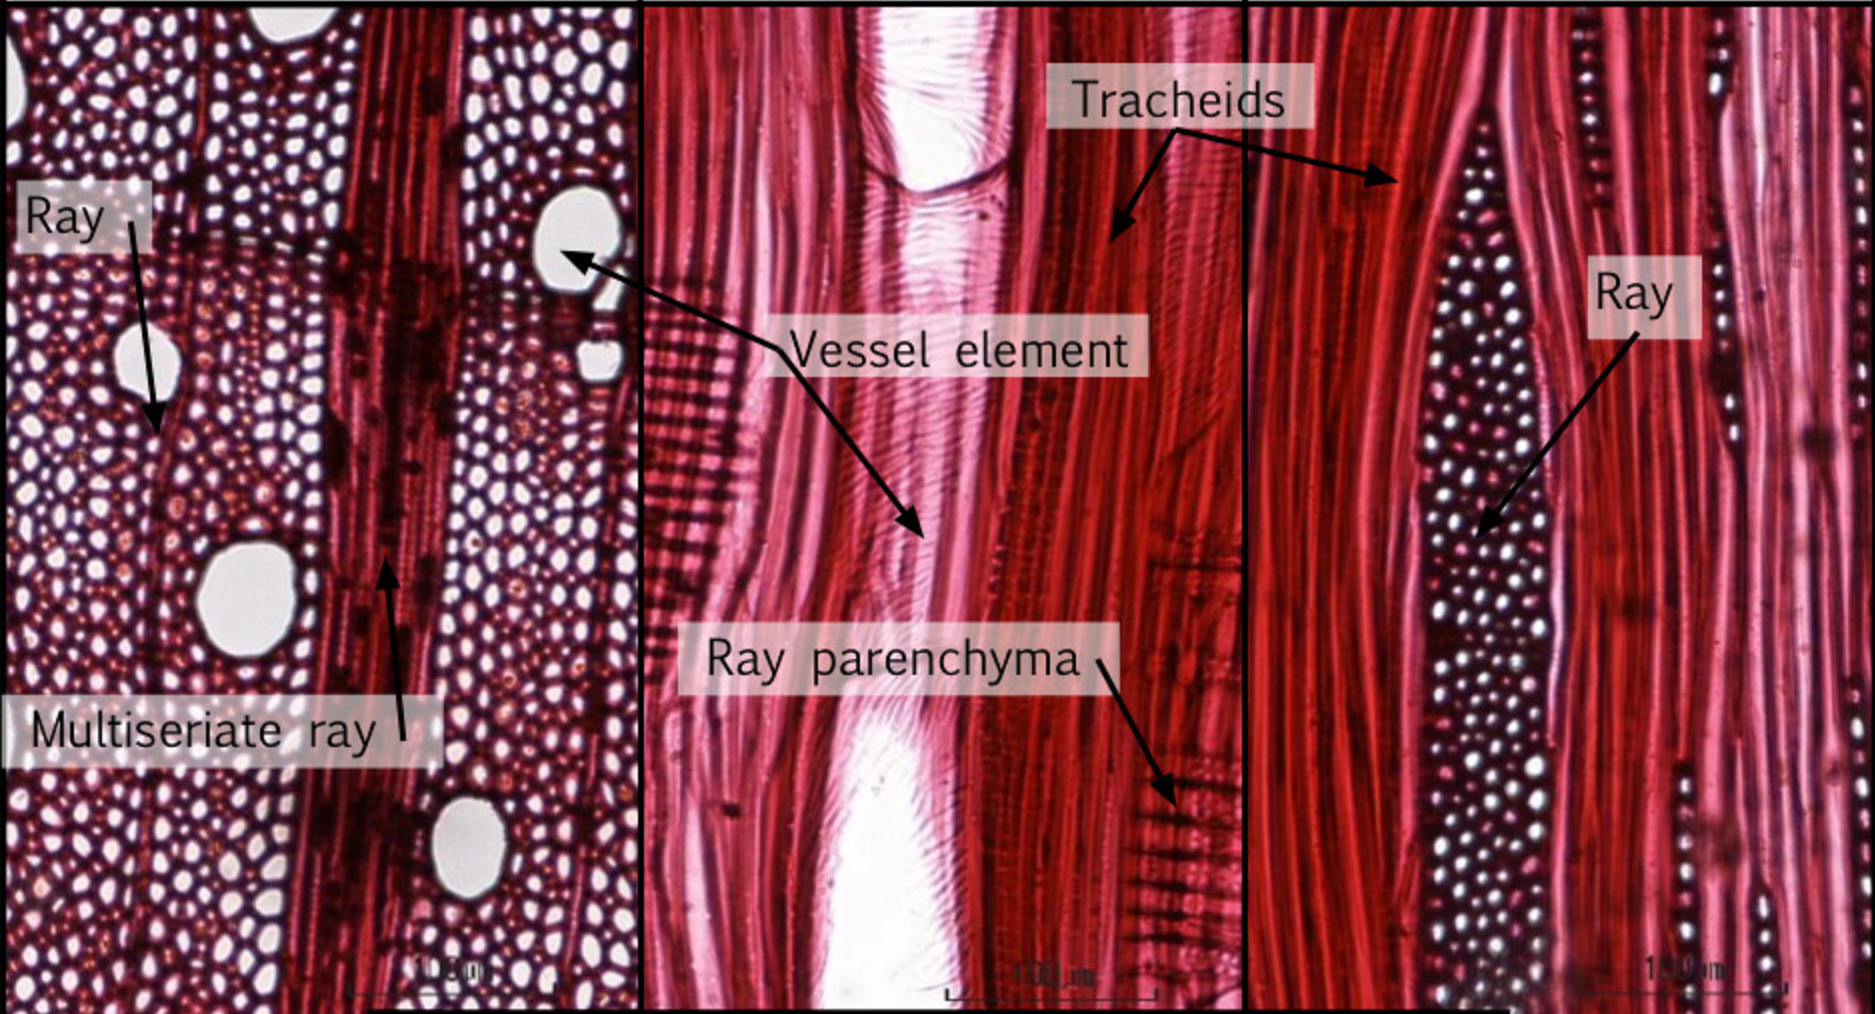 stem tracheids fibers vessels